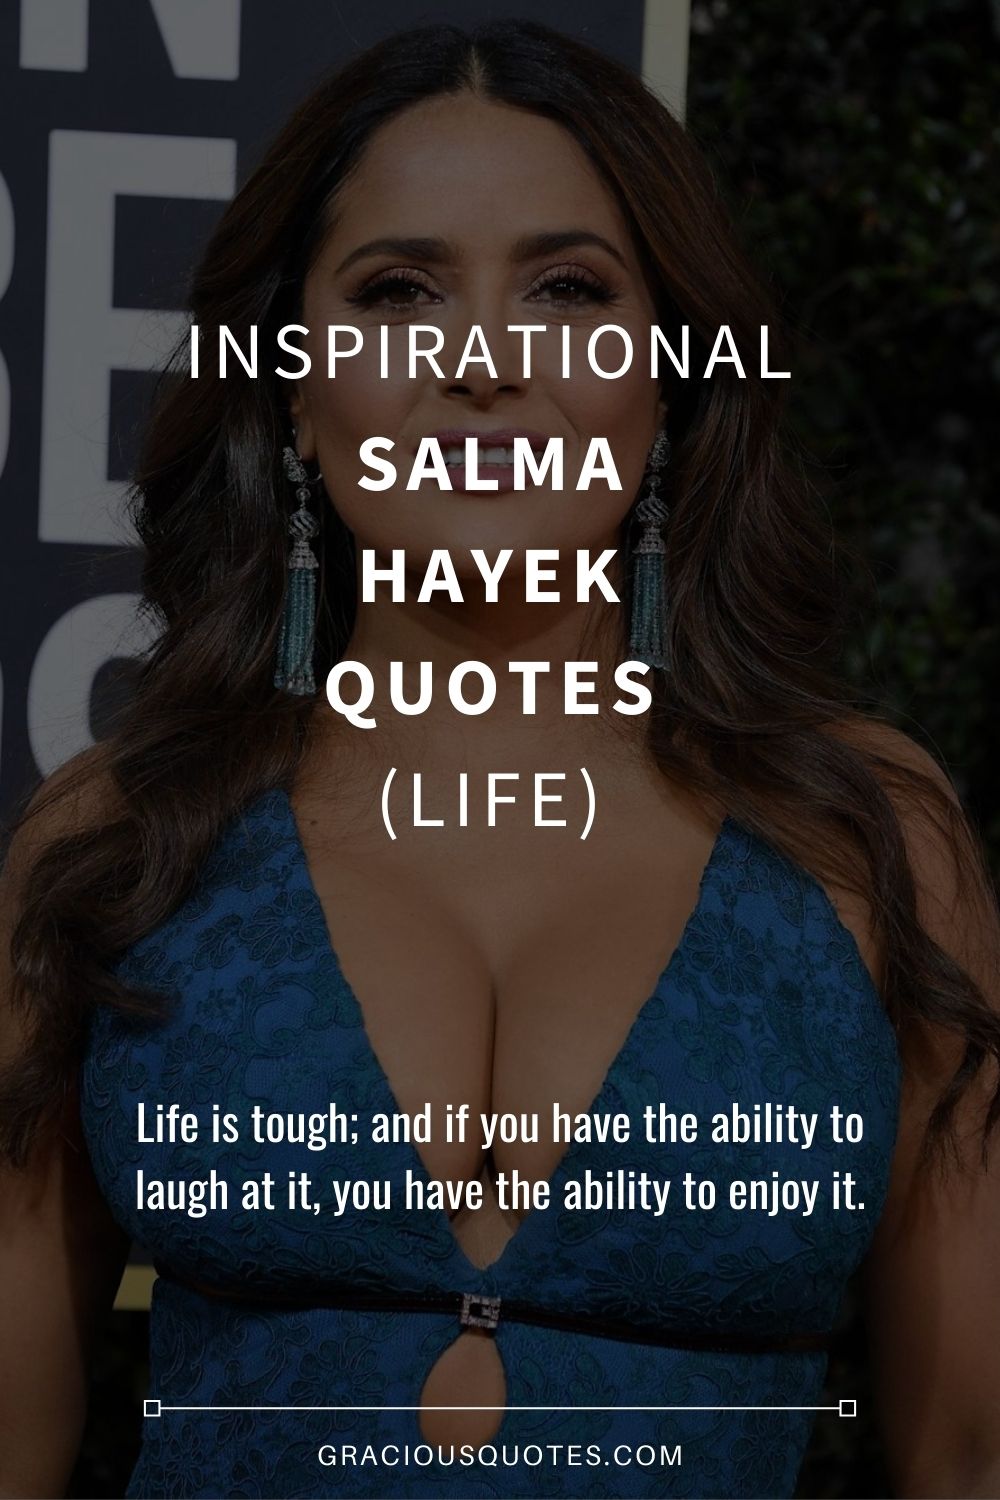 Inspirational Salma Hayek Quotes (LIFE) - Gracious Quotes